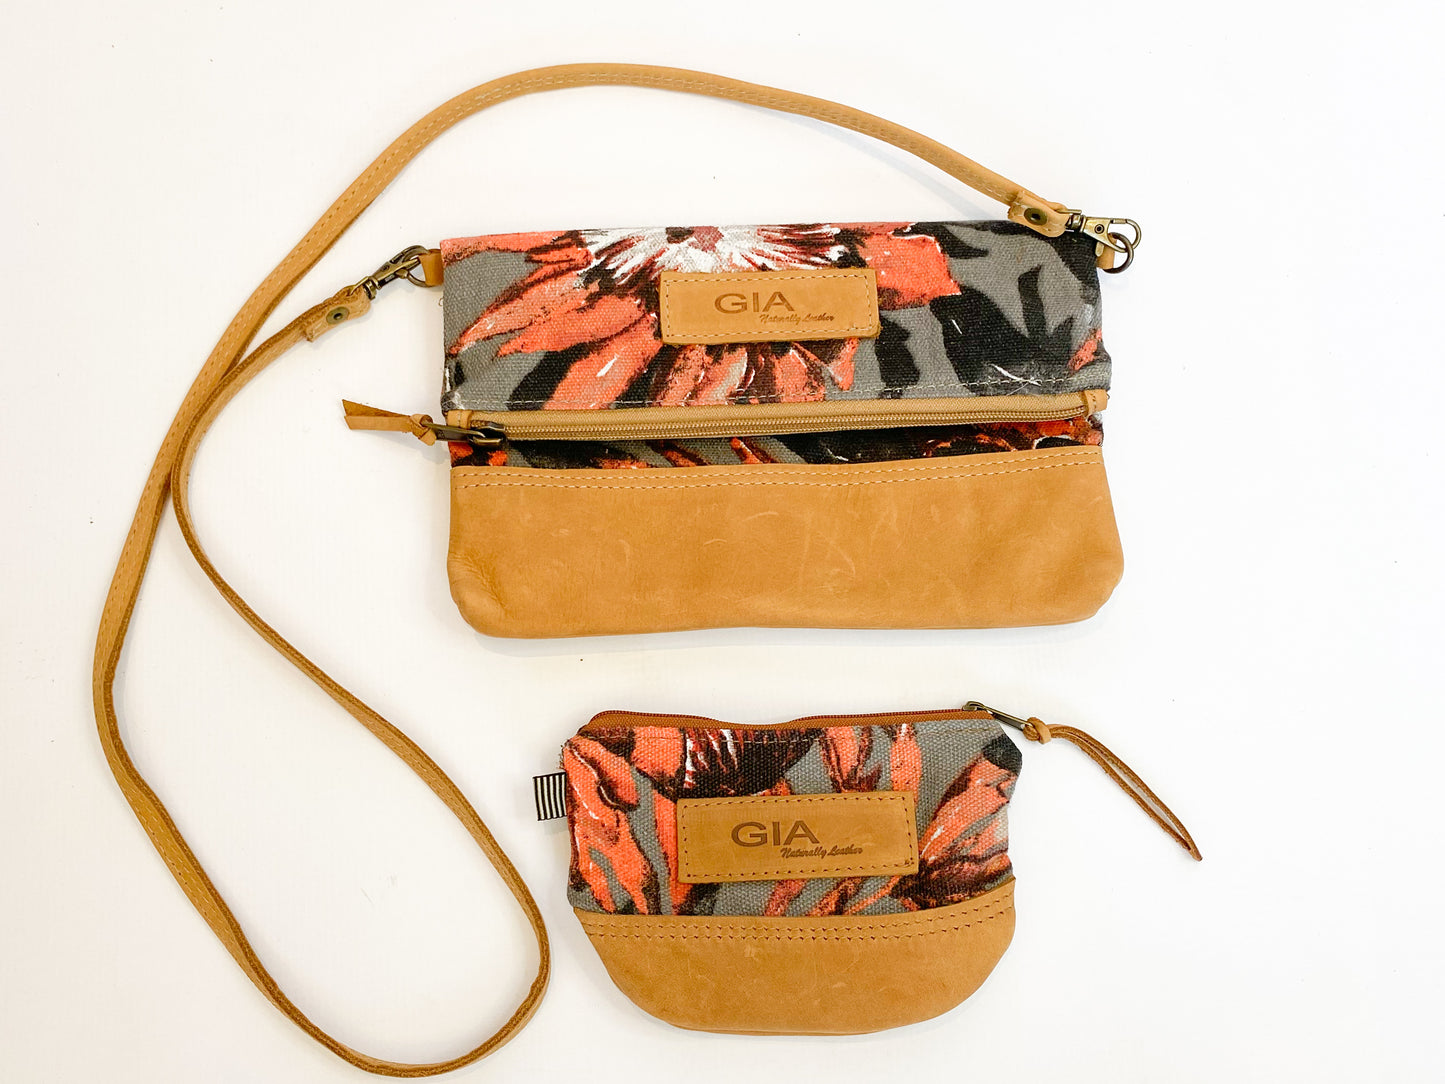 Gia leather and protea foldover bag